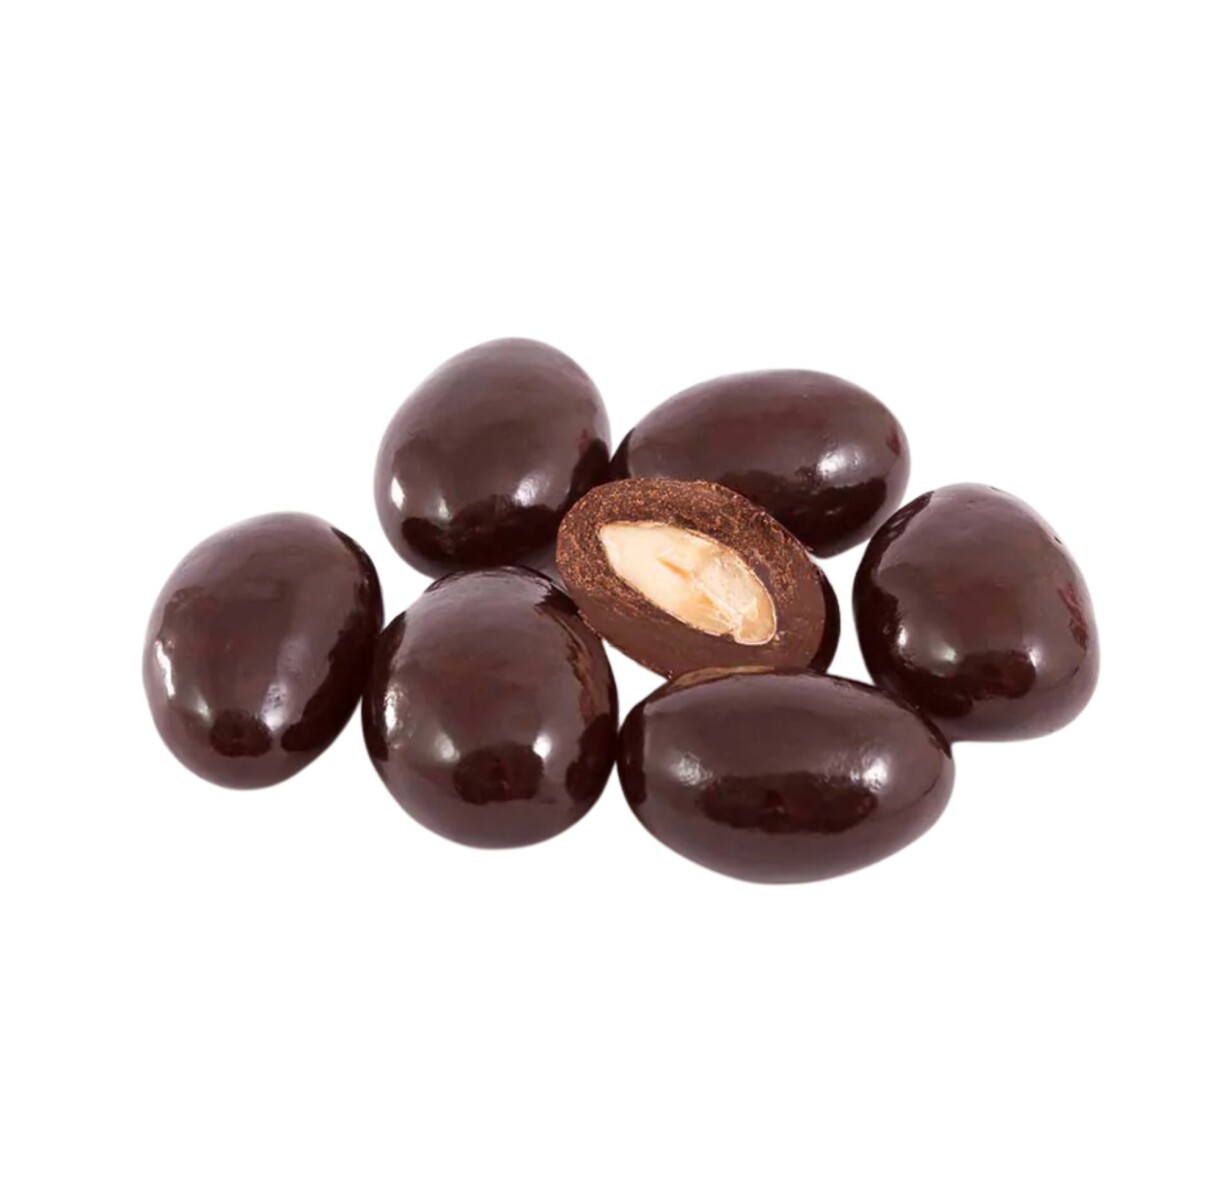 Almendras con chocolate amargo 100g 